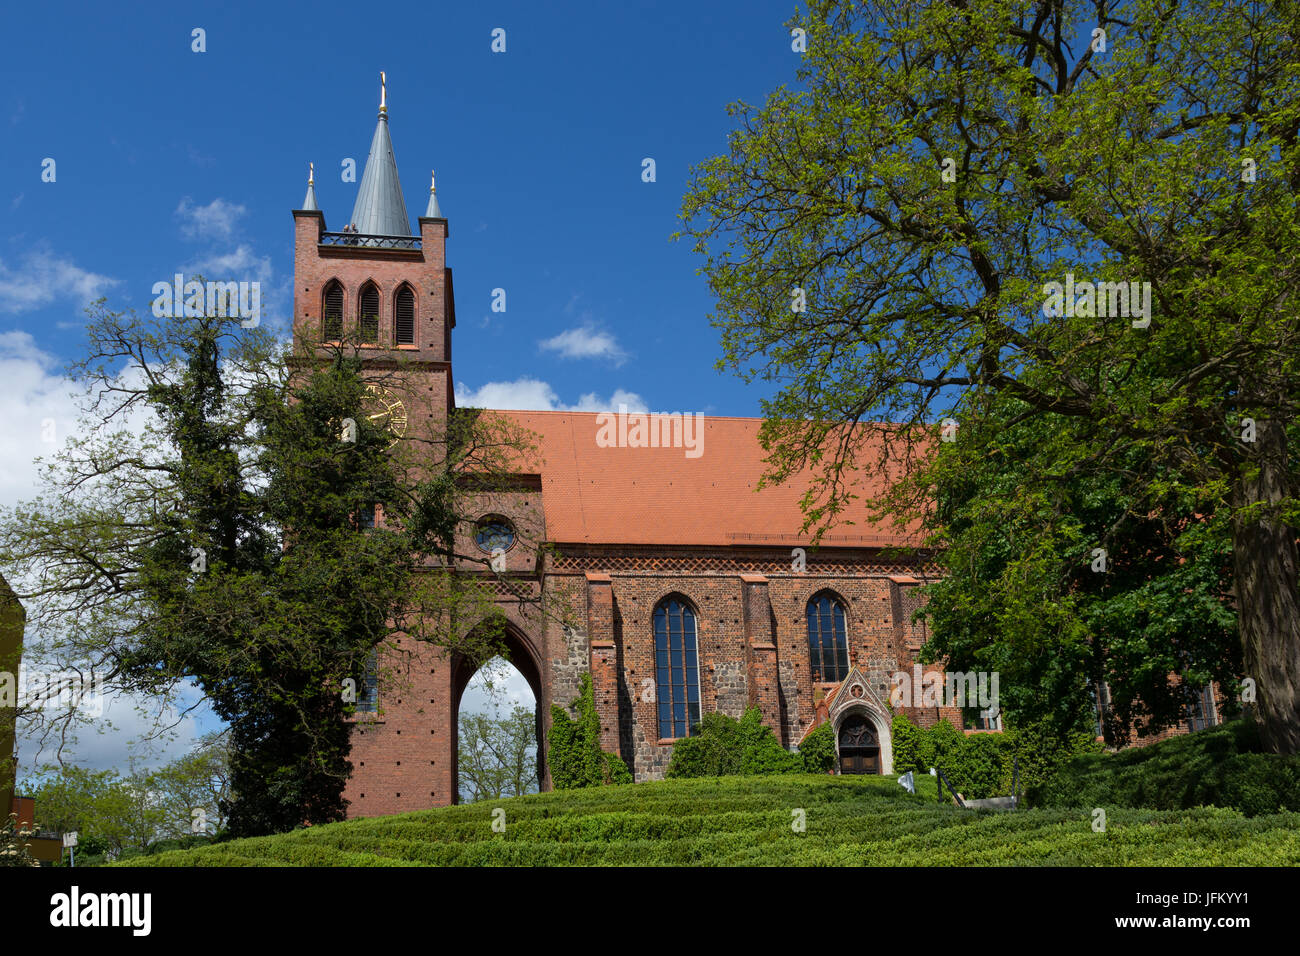 Iglesia de la ciudad de Muencheberg Foto de stock